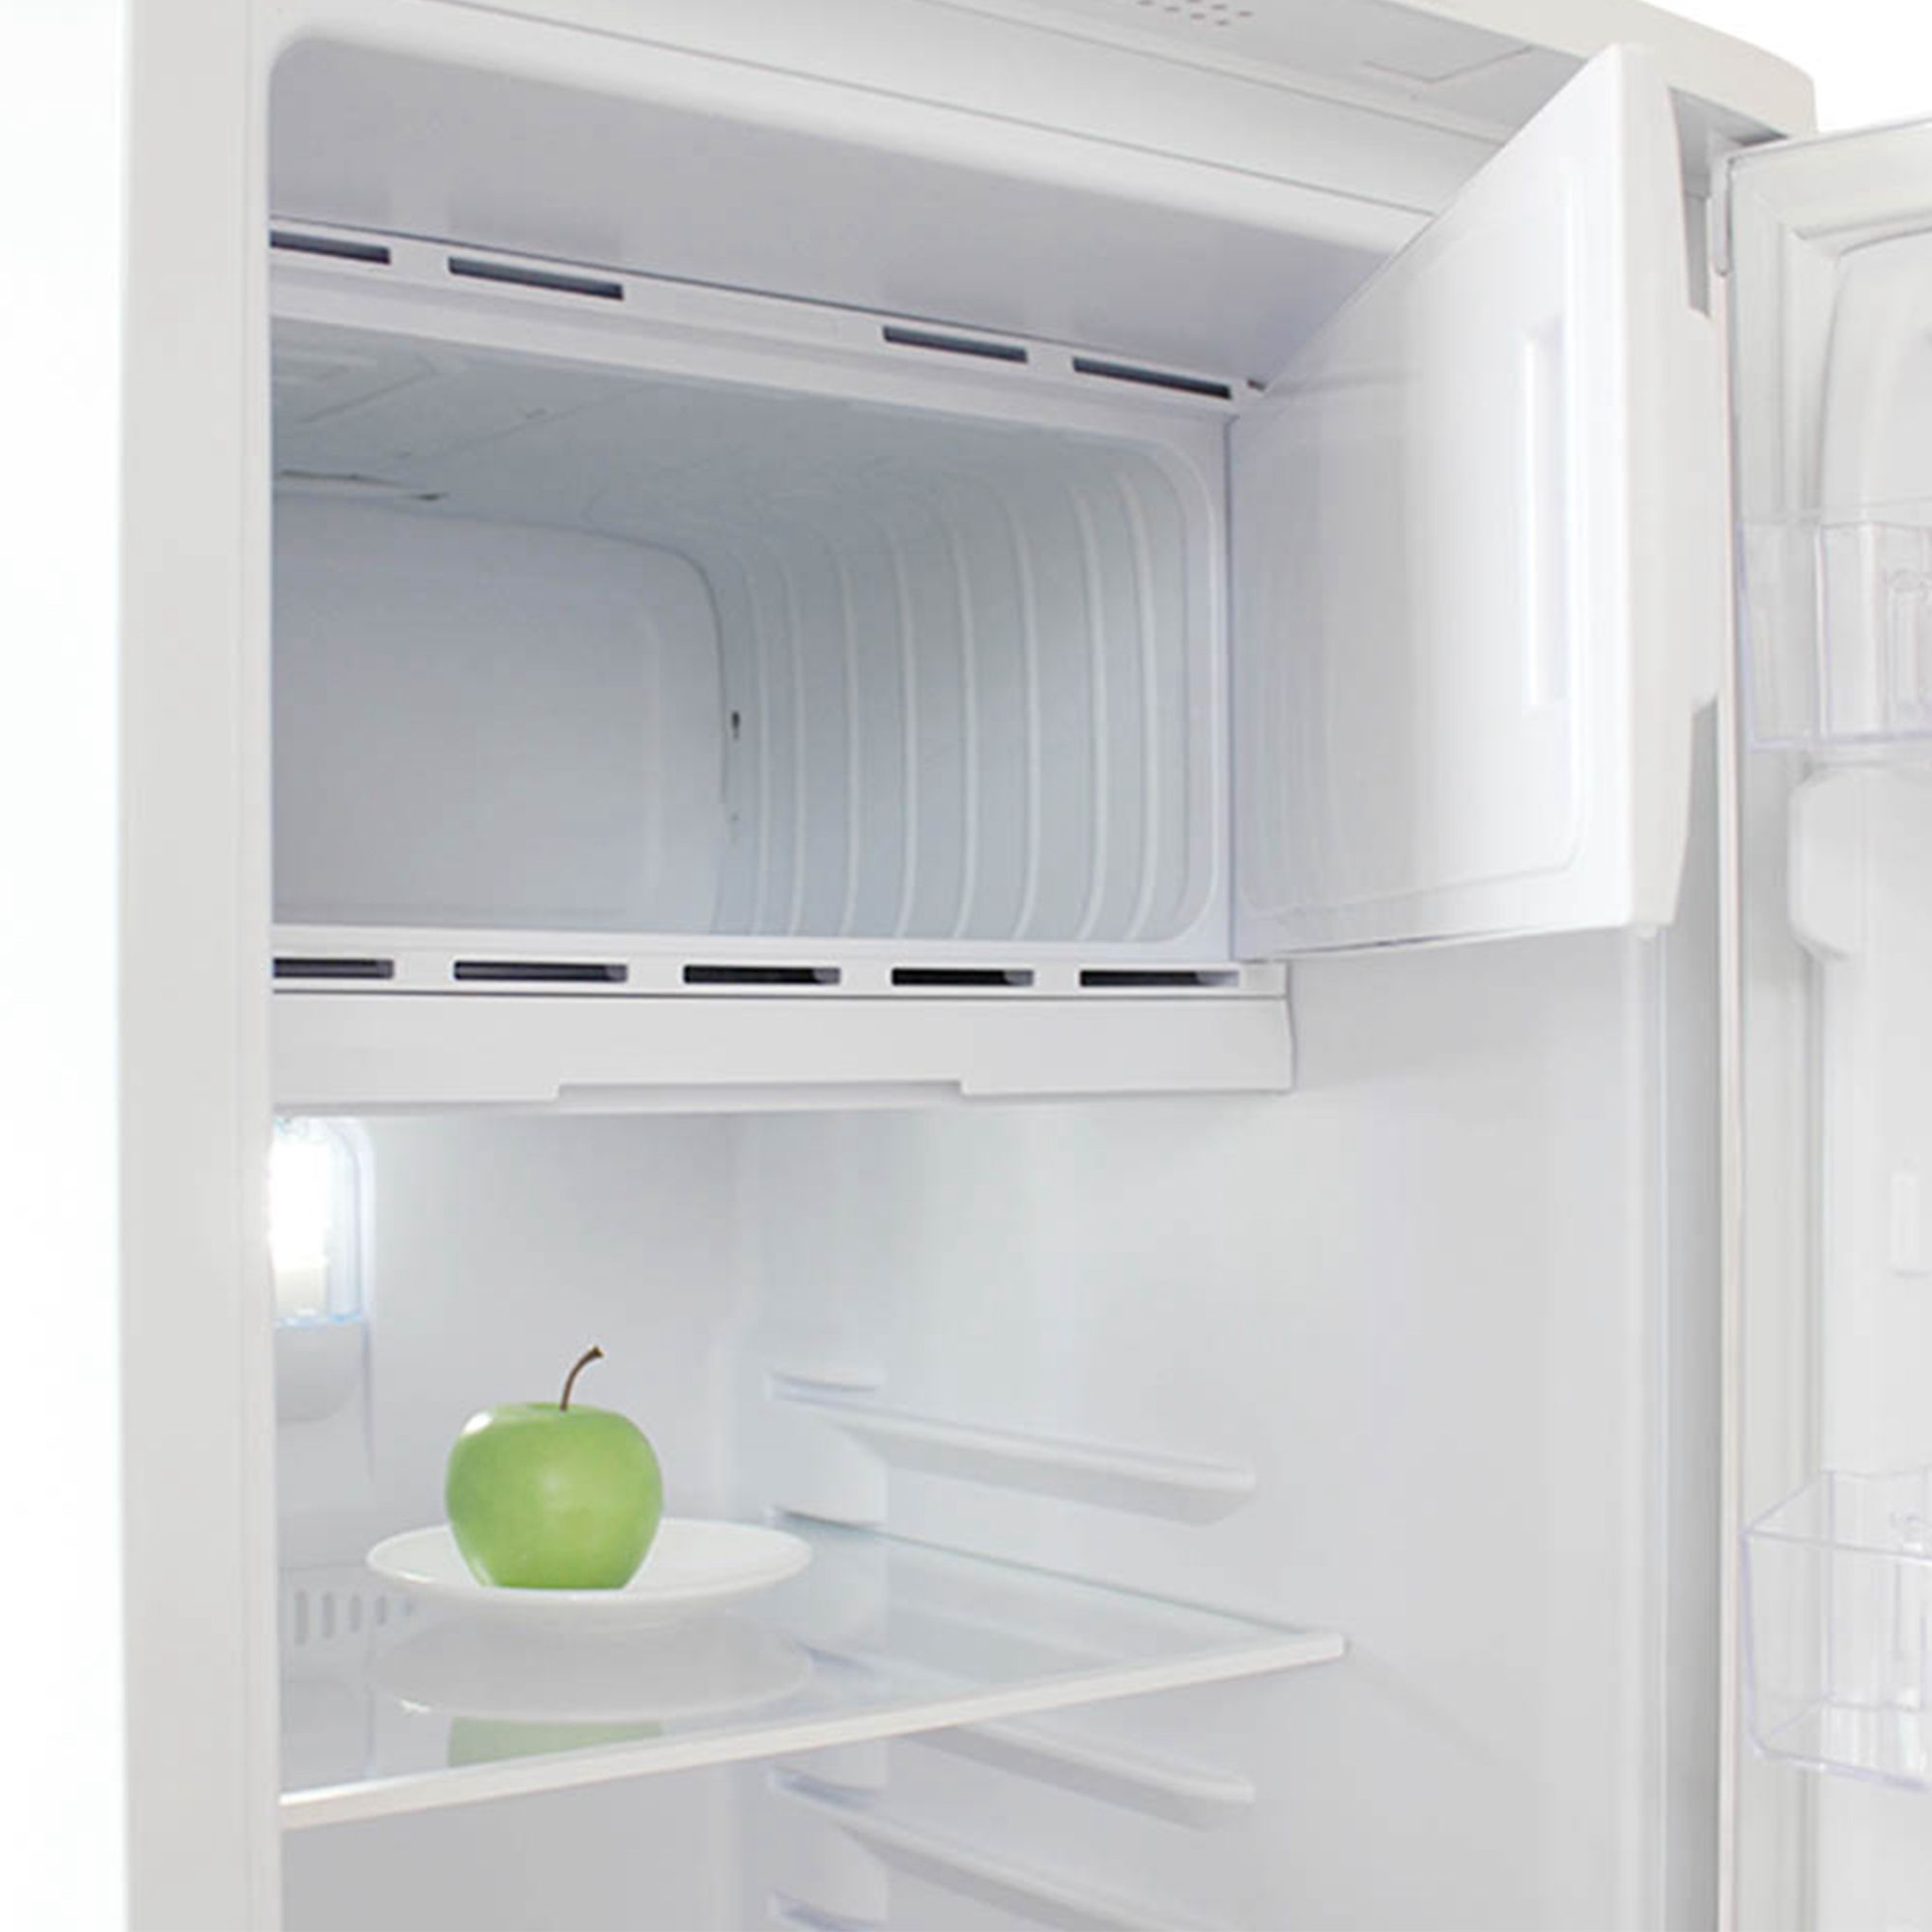 холодильник бирюса 110, купить в Красноярске холодильник бирюса 110,  купить в Красноярске дешево холодильник бирюса 110, купить в Красноярске минимальной цене холодильник бирюса 110